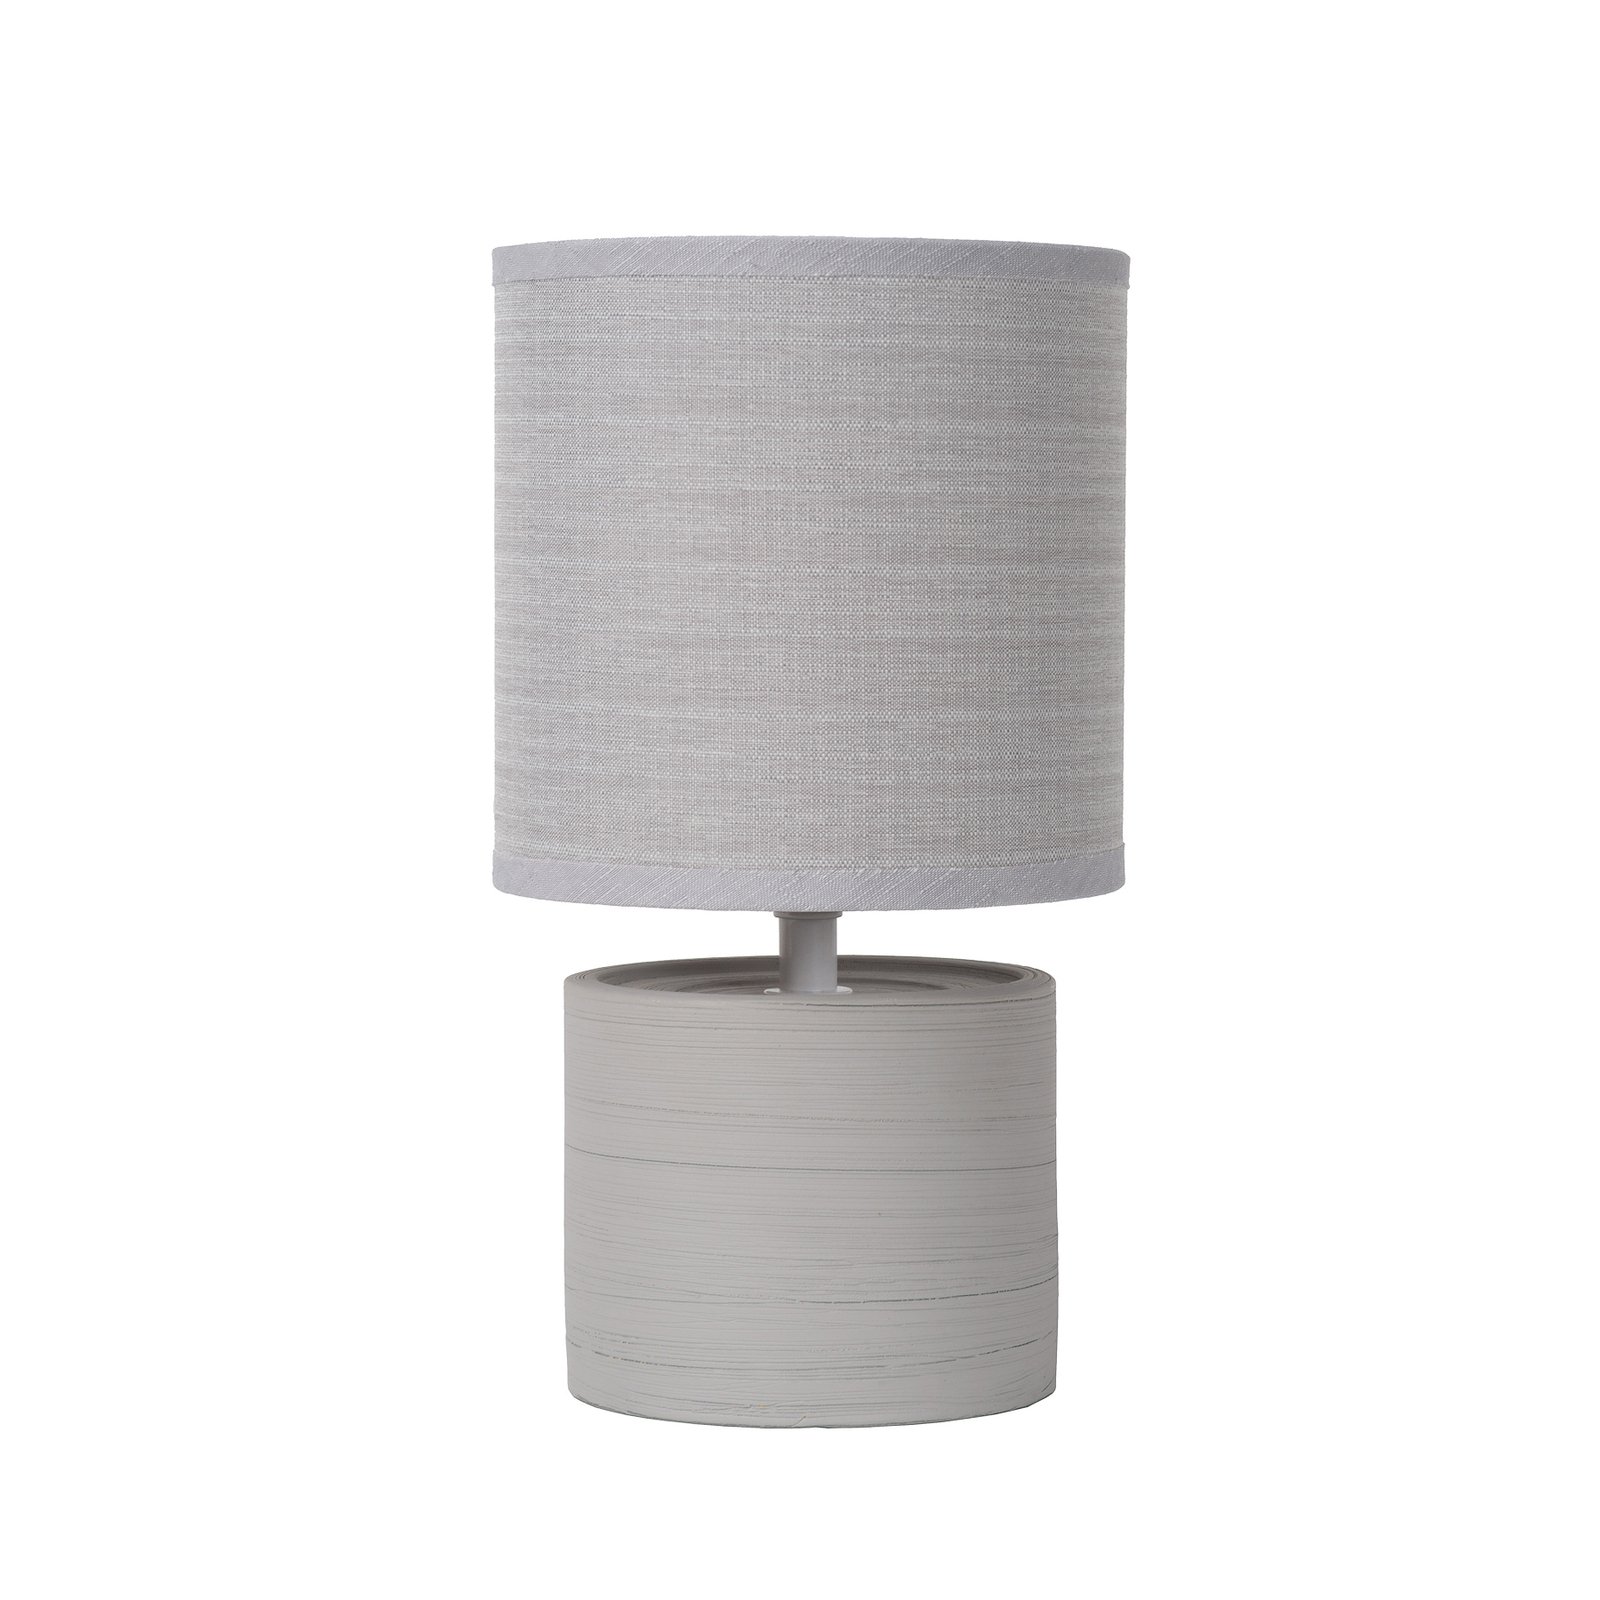 Greasby stolna lampa s tekstilnim sjenilom, siva